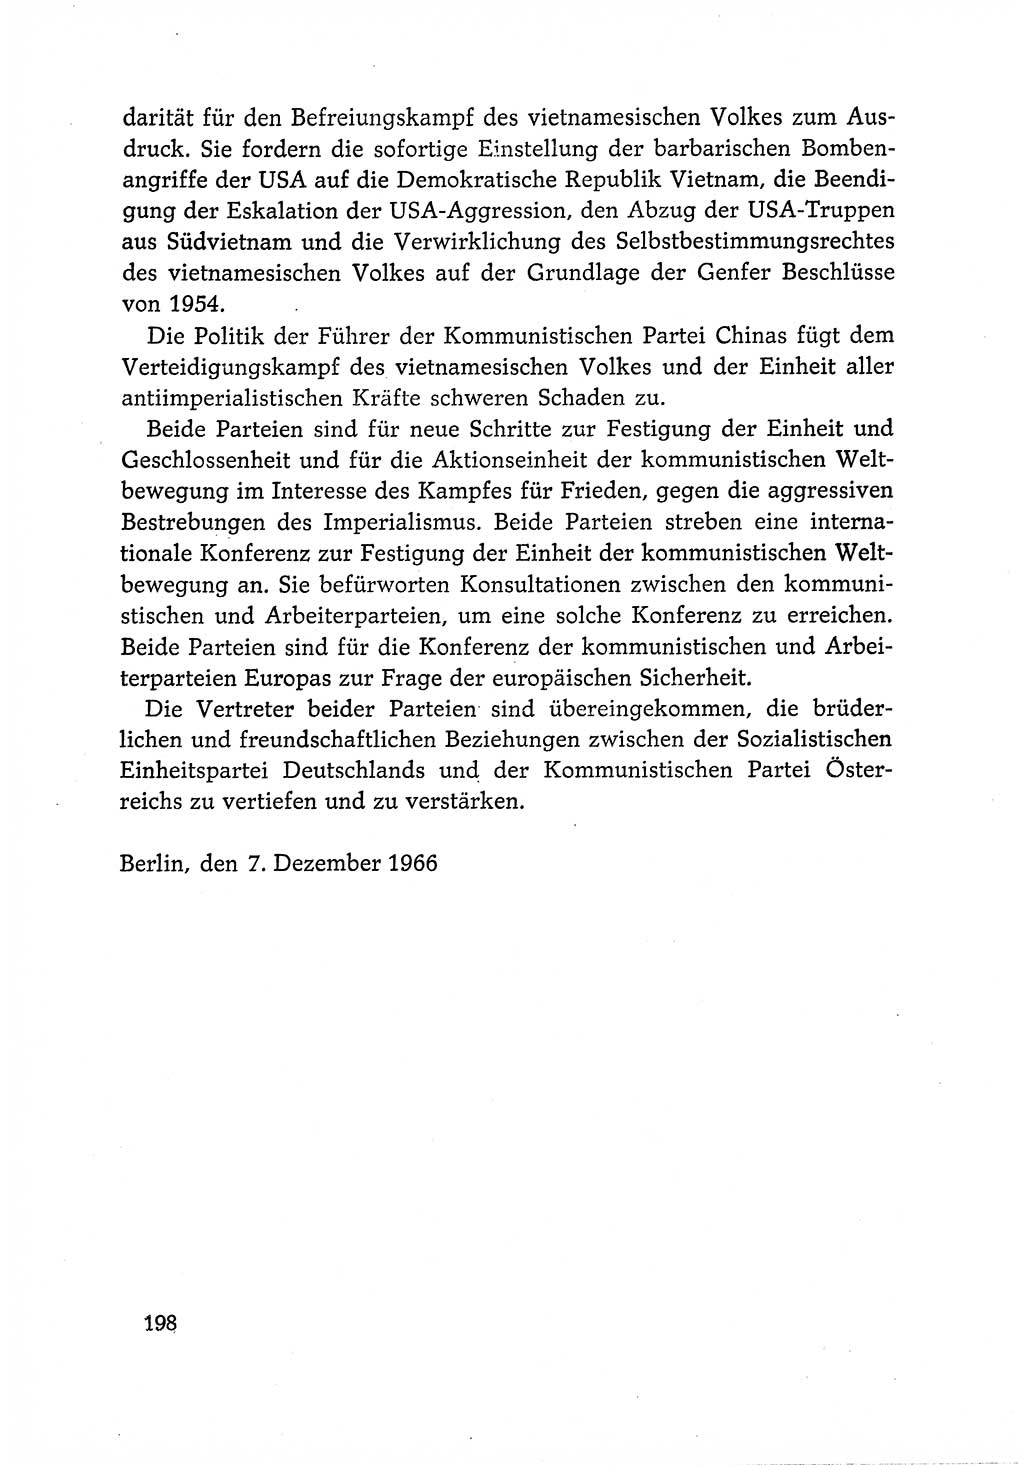 Dokumente der Sozialistischen Einheitspartei Deutschlands (SED) [Deutsche Demokratische Republik (DDR)] 1966-1967, Seite 198 (Dok. SED DDR 1966-1967, S. 198)